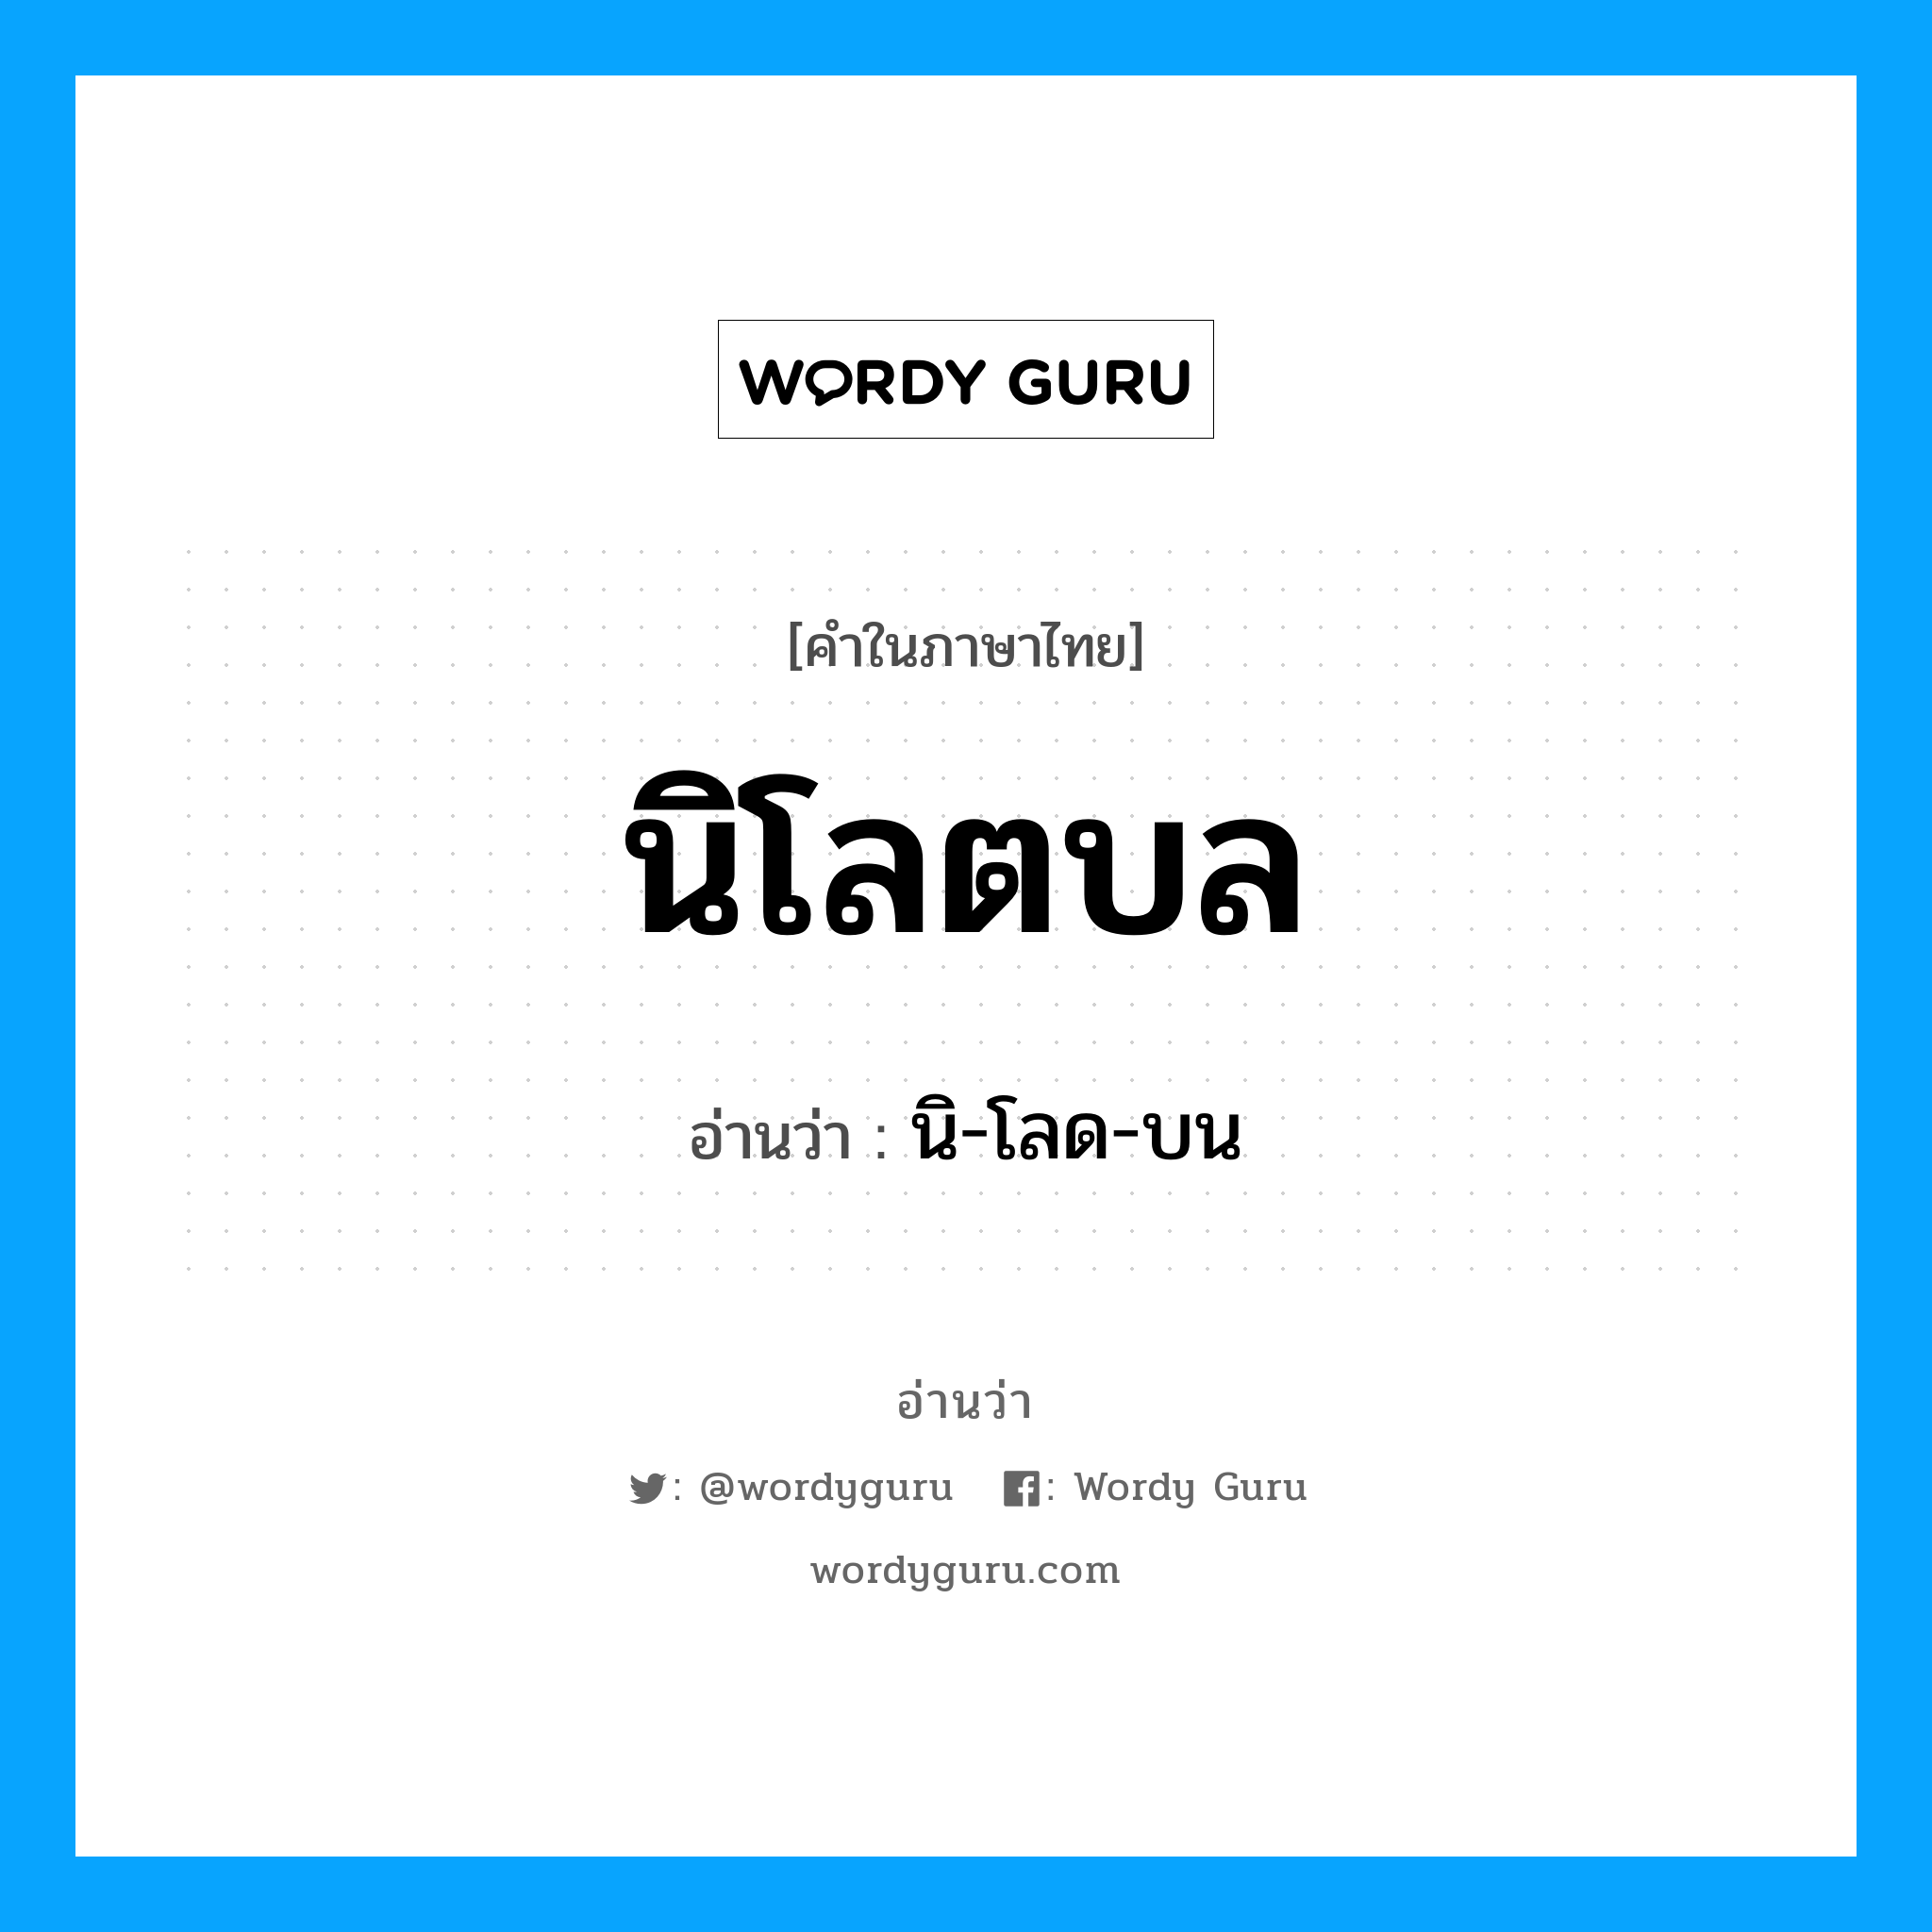 นิ-โลด-บน เป็นคำอ่านของคำไหน?, คำในภาษาไทย นิ-โลด-บน อ่านว่า นิโลตบล